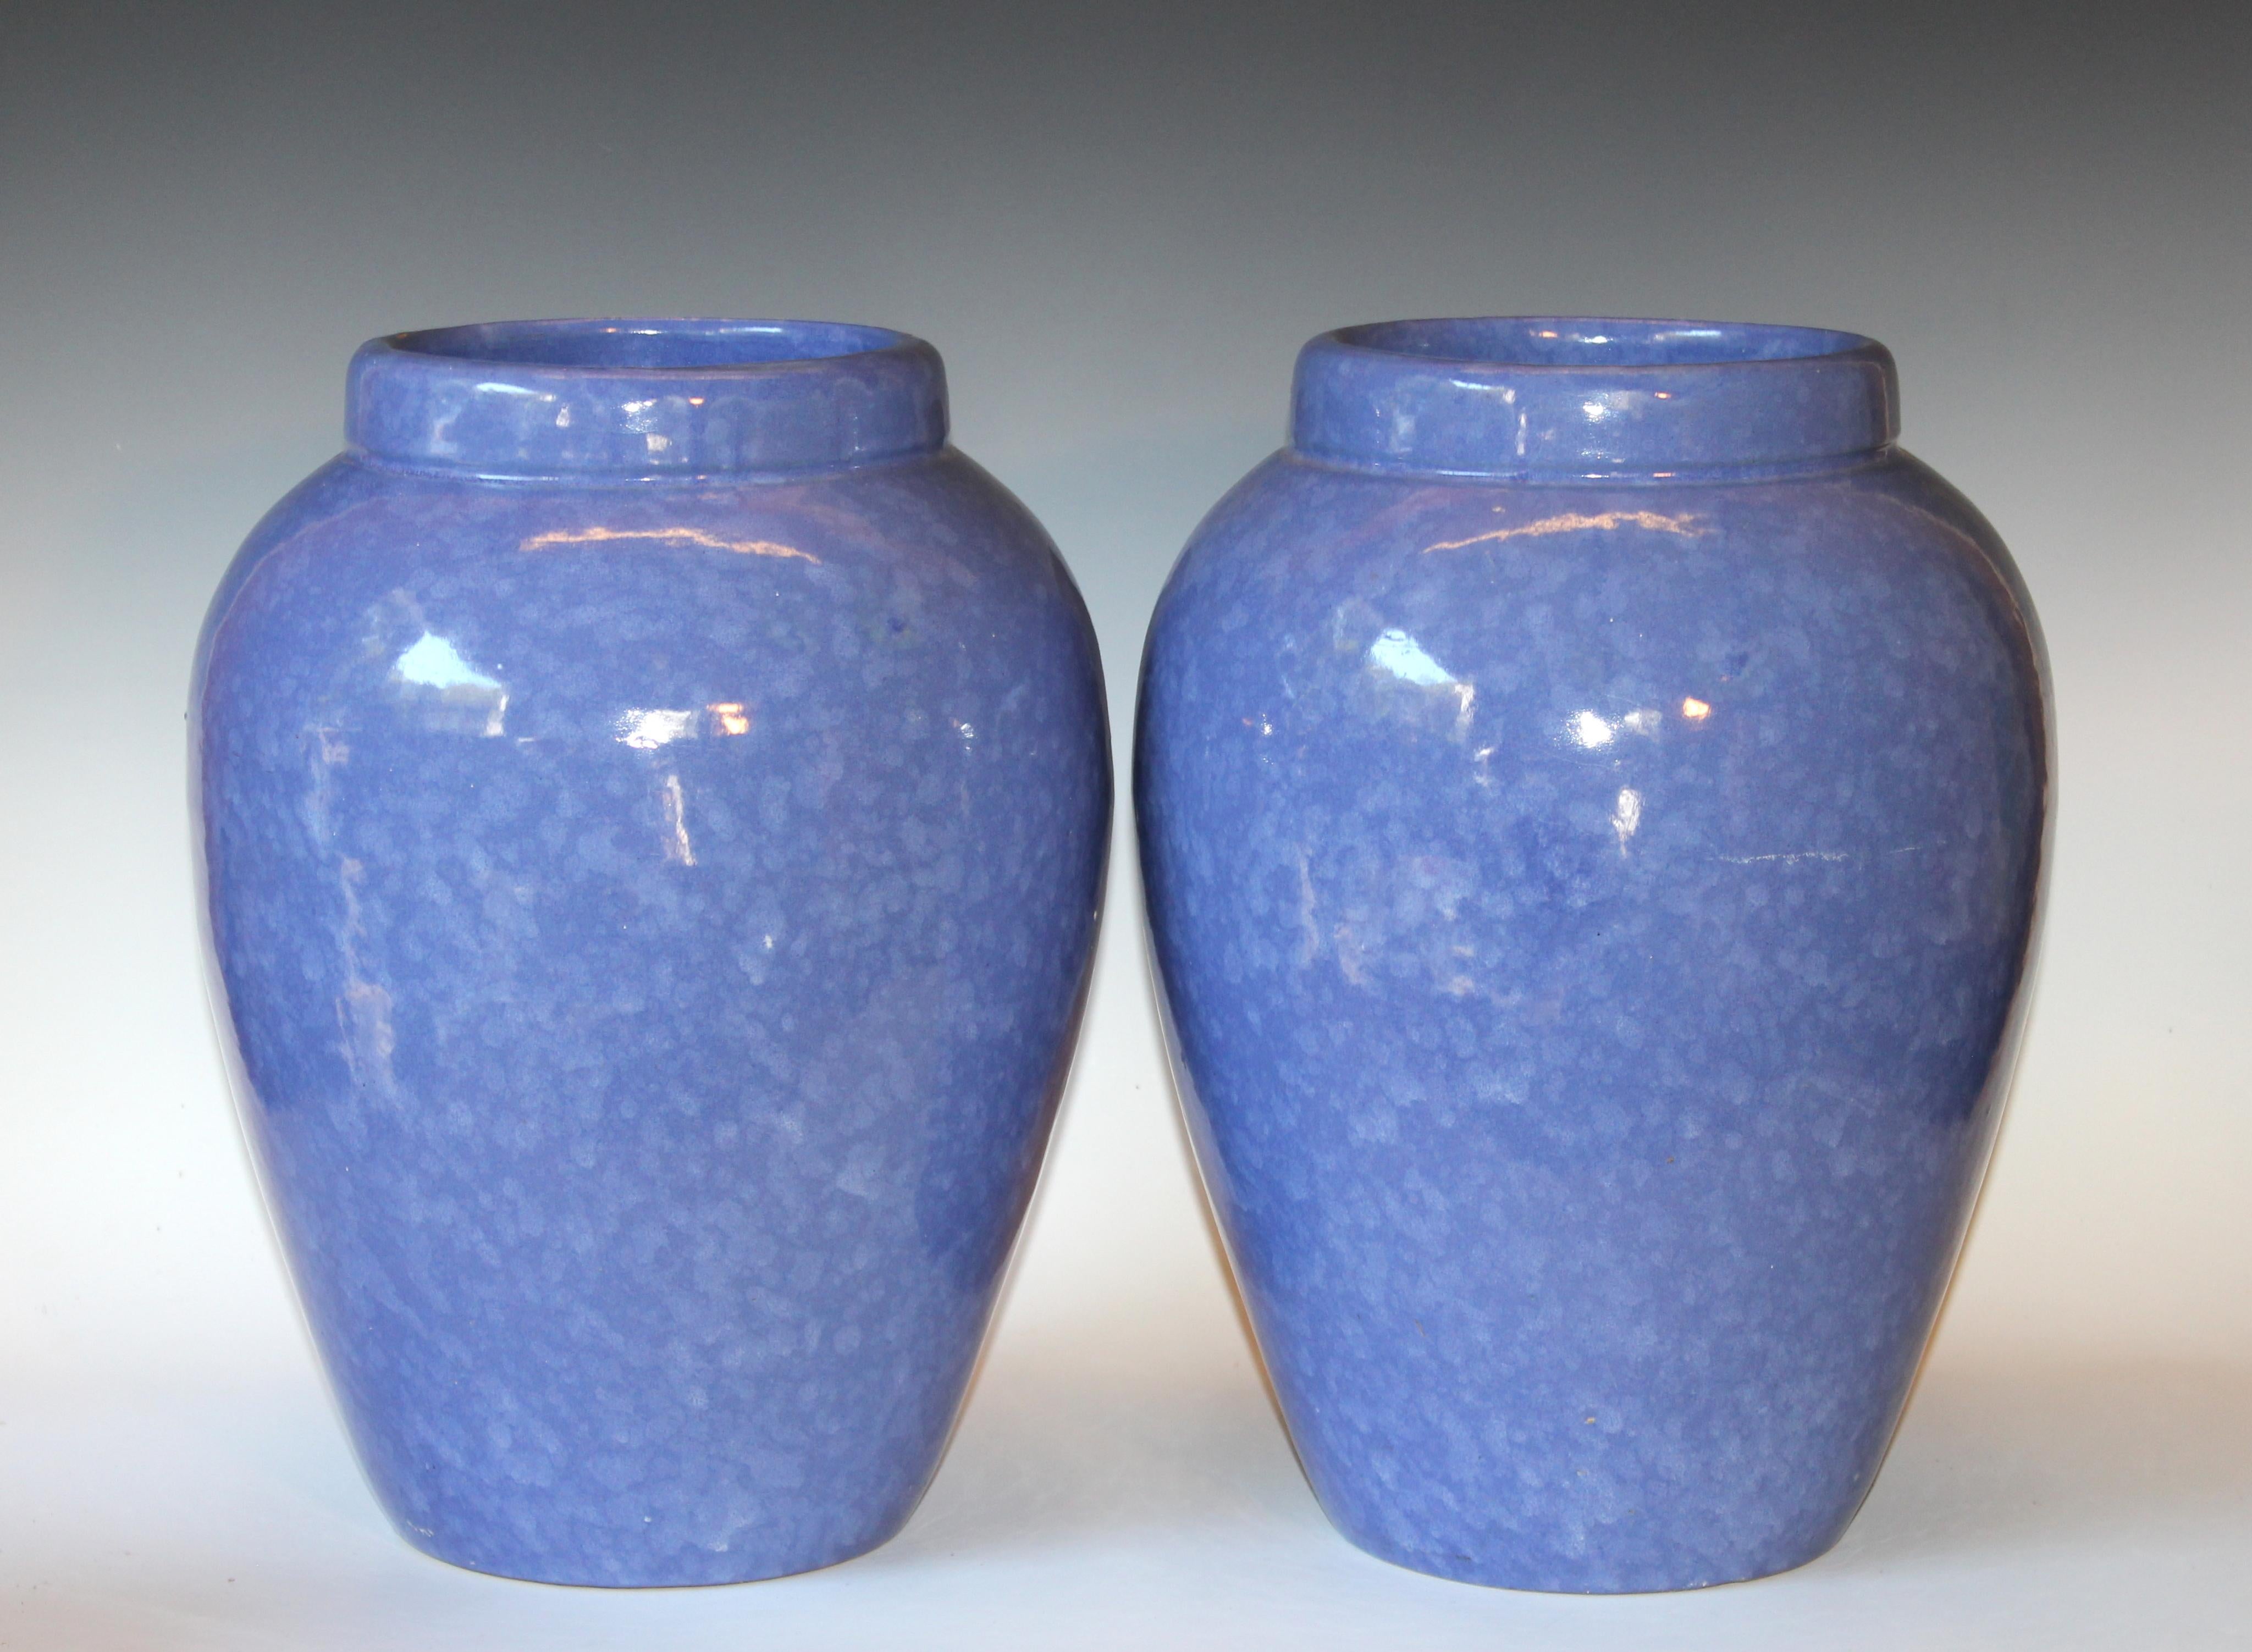 RRP CO Oil Jars McCoy Vases Mottled Blue Large Vintage Floor Pottery Urns, Pair 1